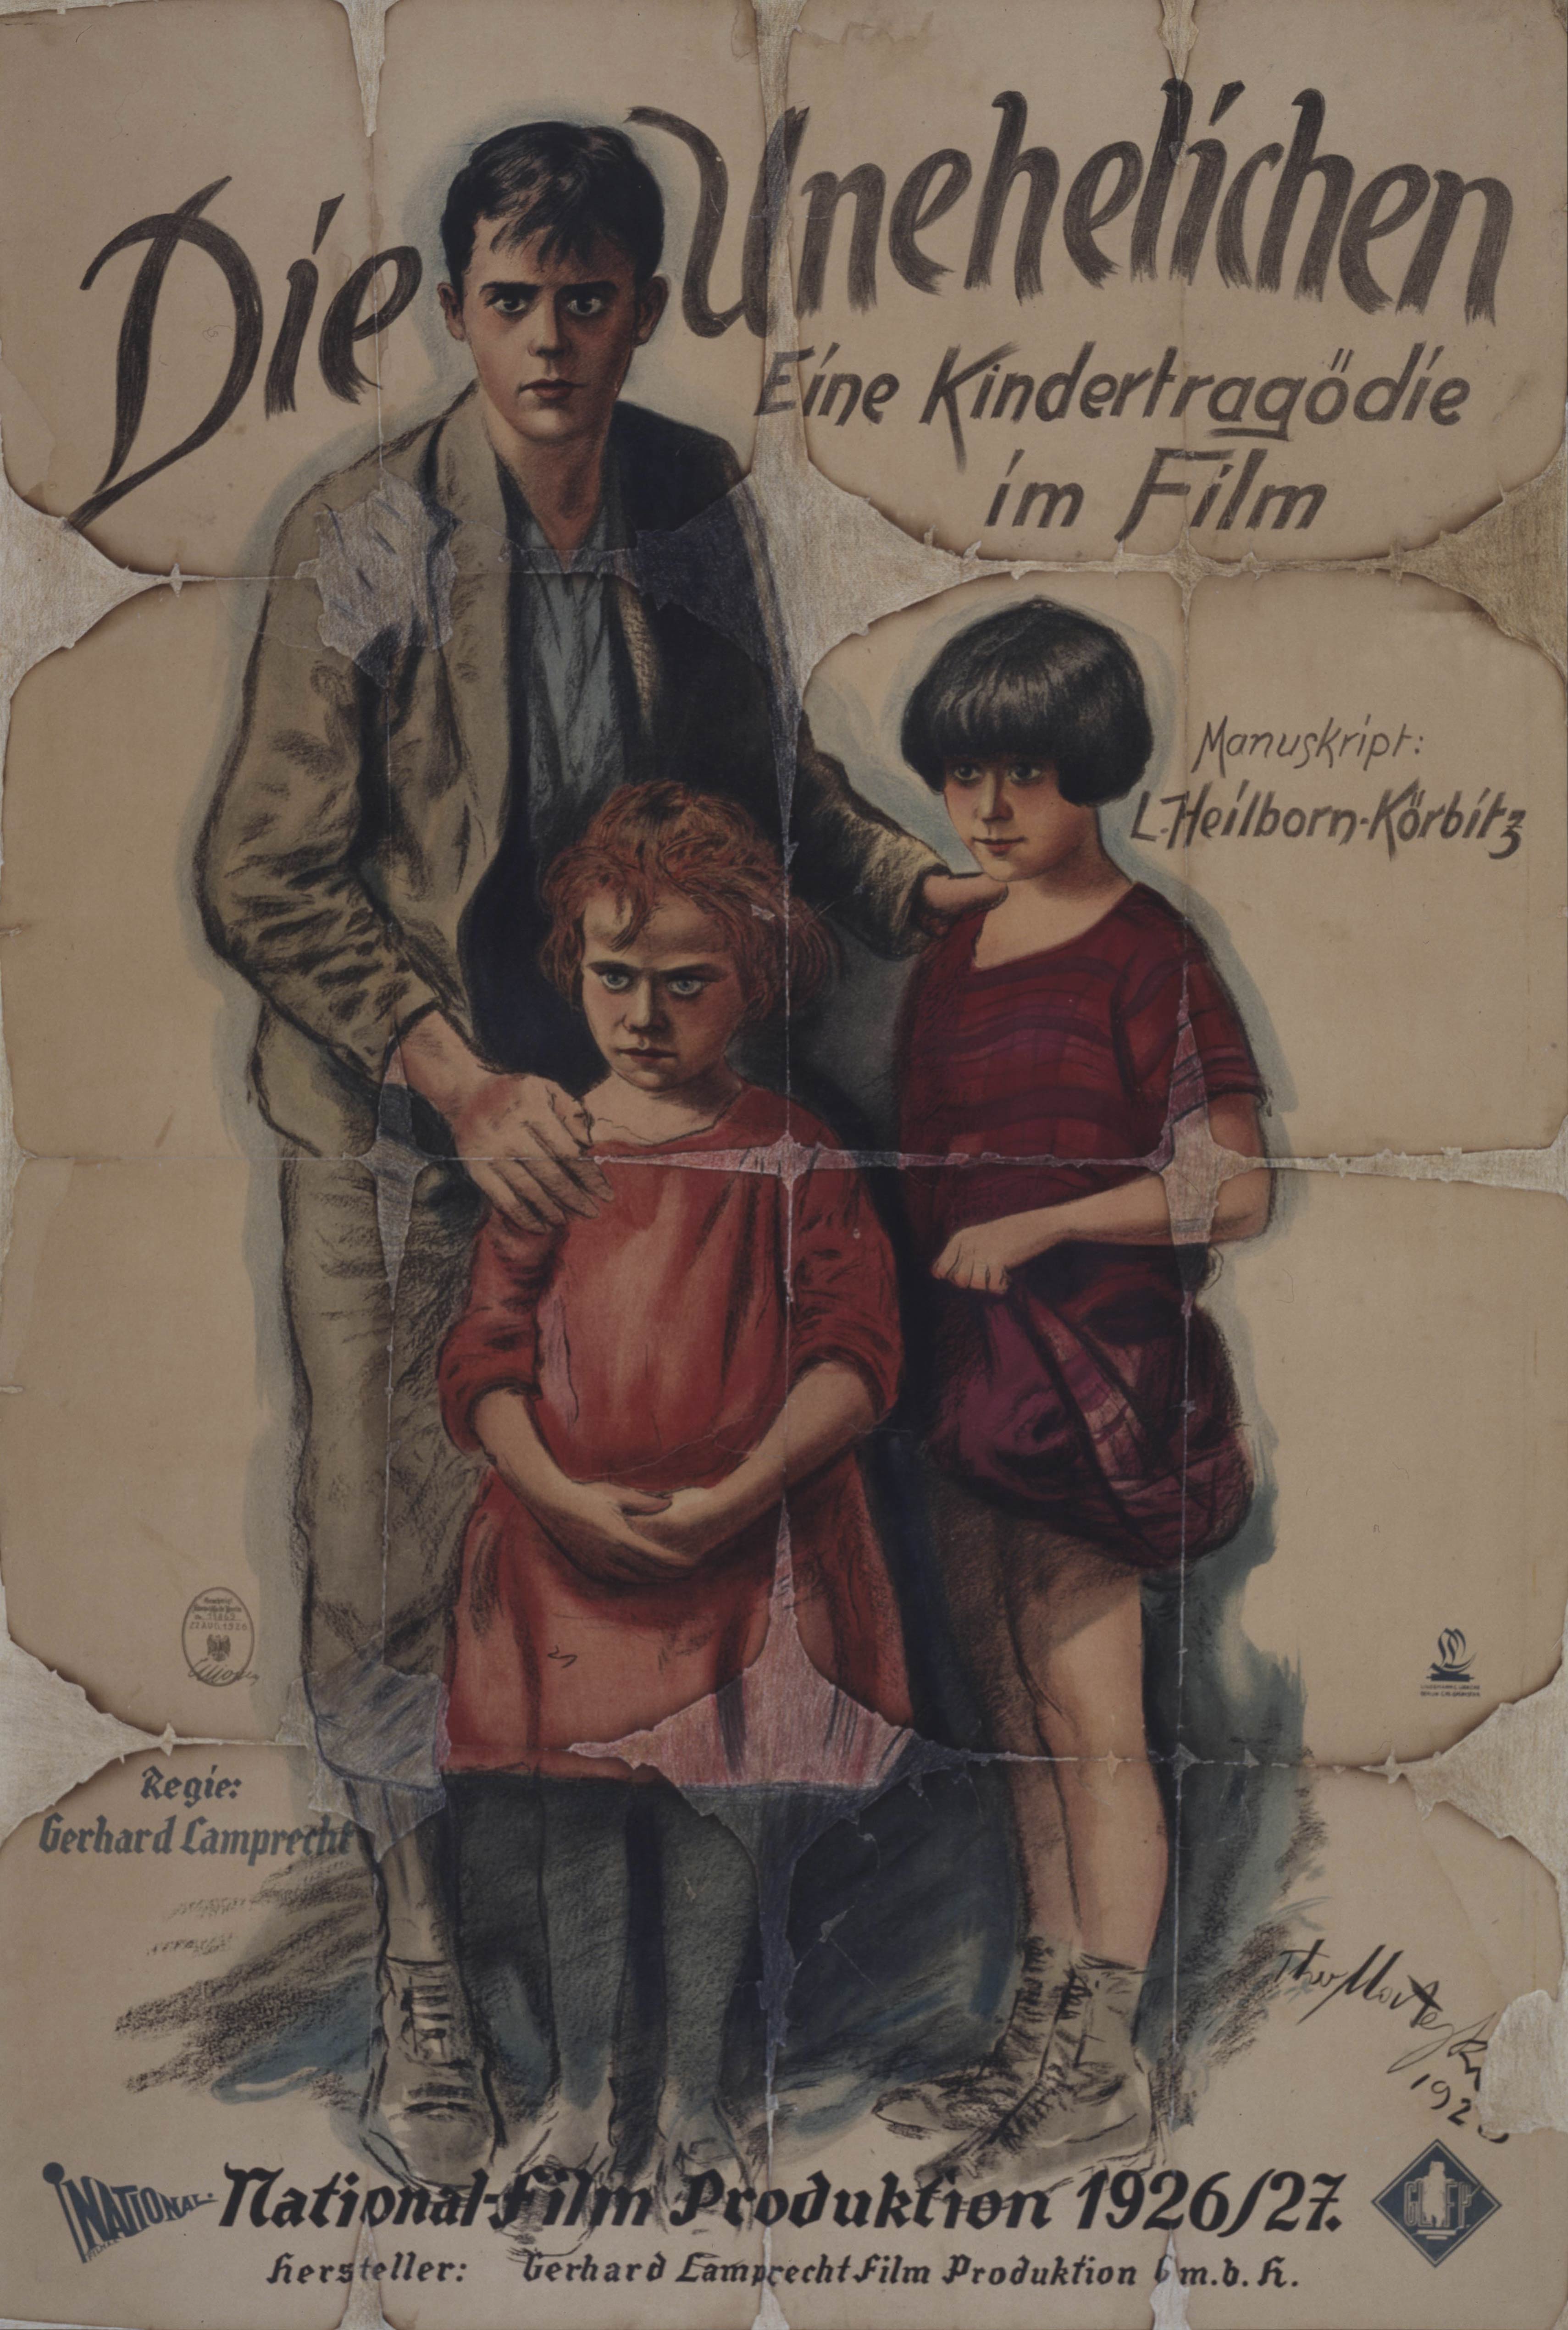 Film poster for Die Unehelichen, Germany 1926